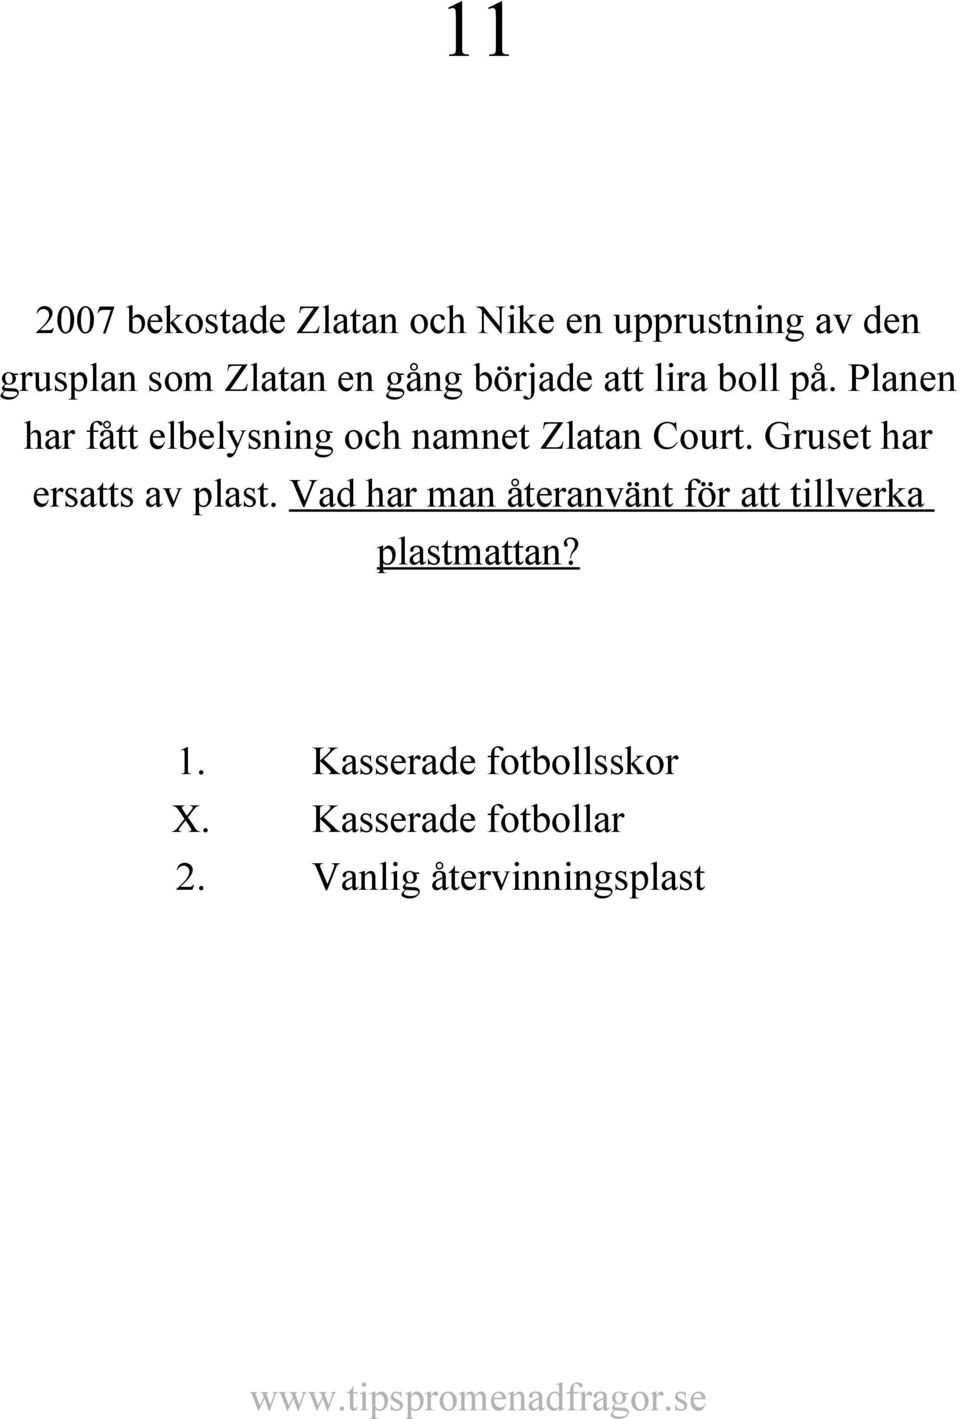 Planen har fått elbelysning och namnet Zlatan Court. Gruset har ersatts av plast.